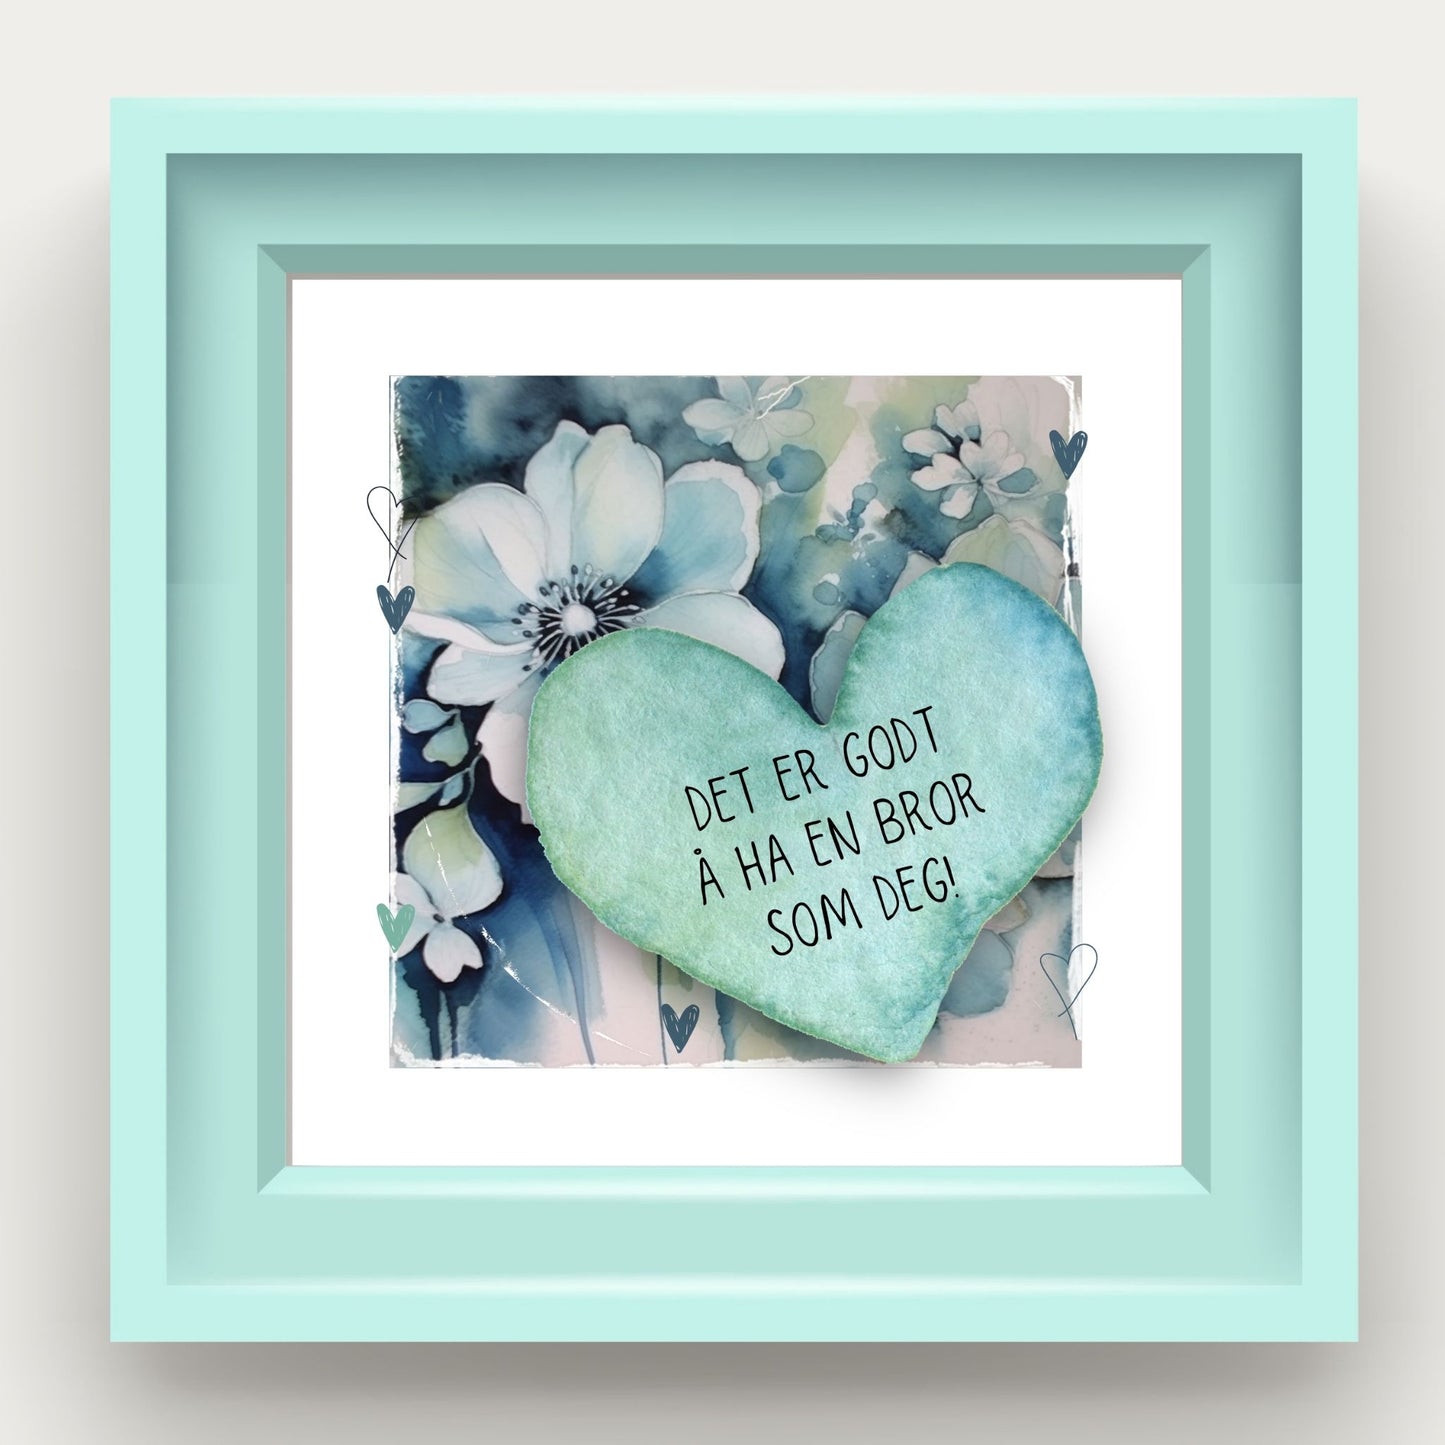 Grafisk plakat med et lyseblått hjerte påført tekst "Det er godt å ha en bror som deg!". Bagrunn med blomster i blåtoner. Illustrasjon viser plakat i lyseblå ramme.